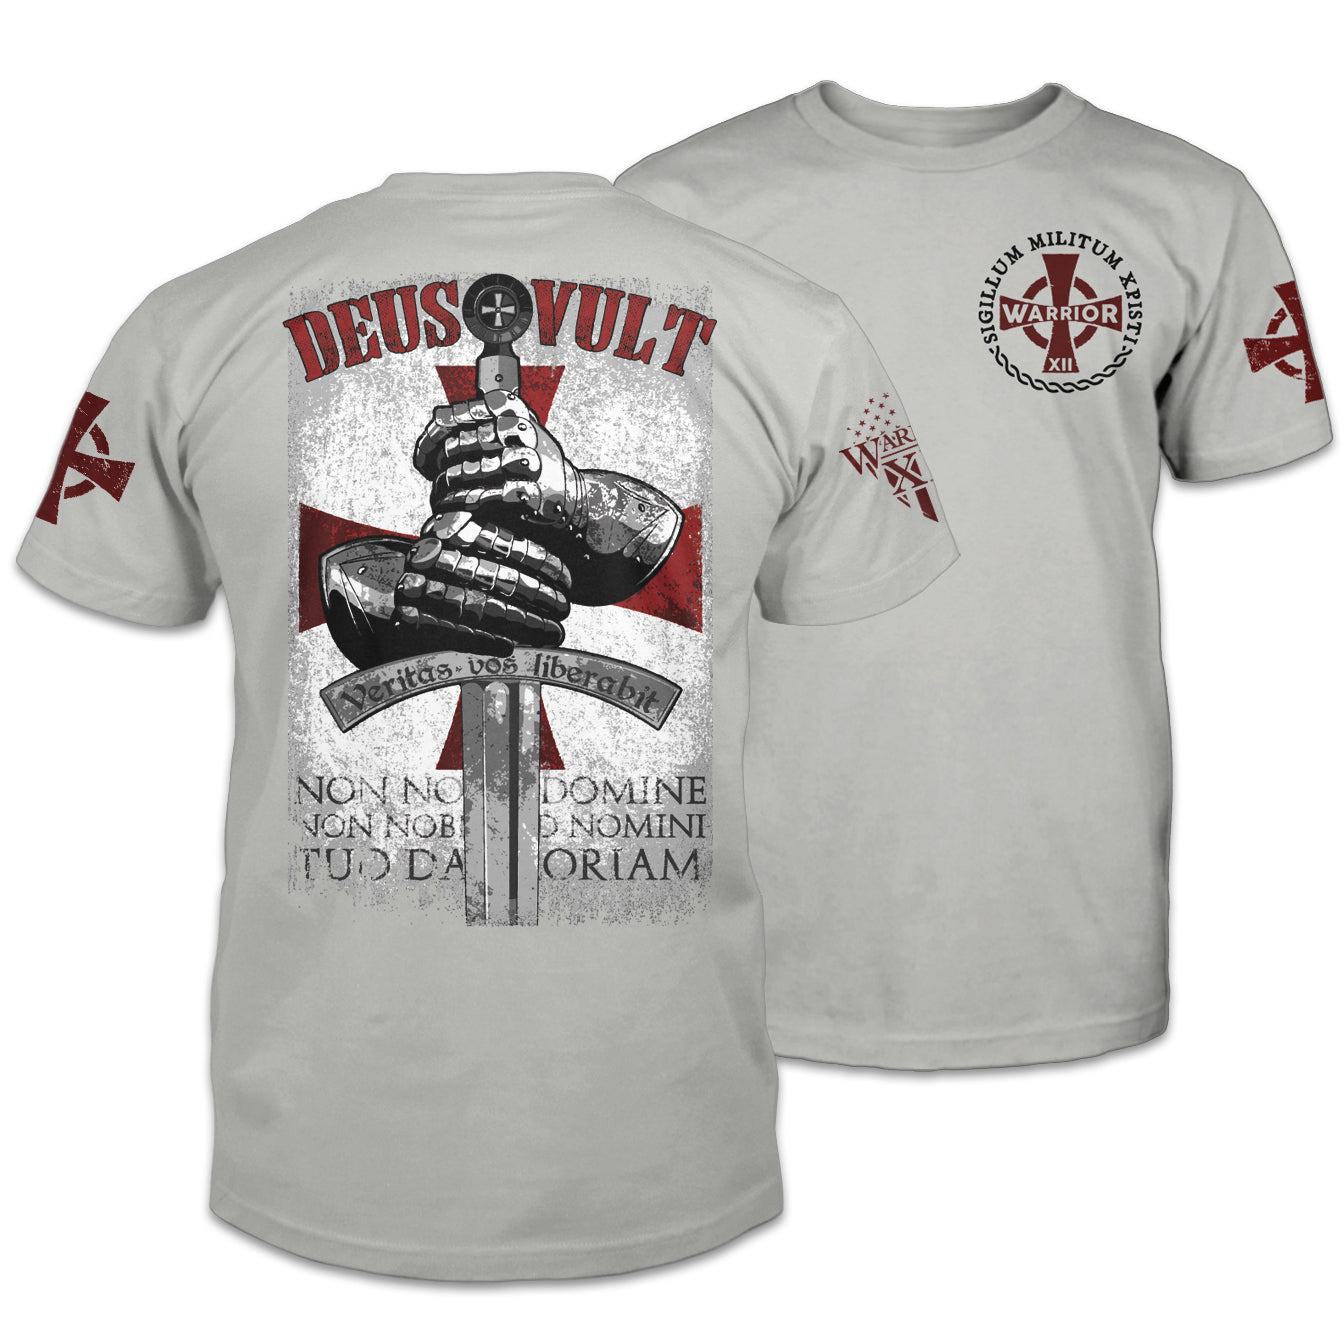 New Men's Size 3X Large Top Gun White T-shirt Rock American /U.S/A